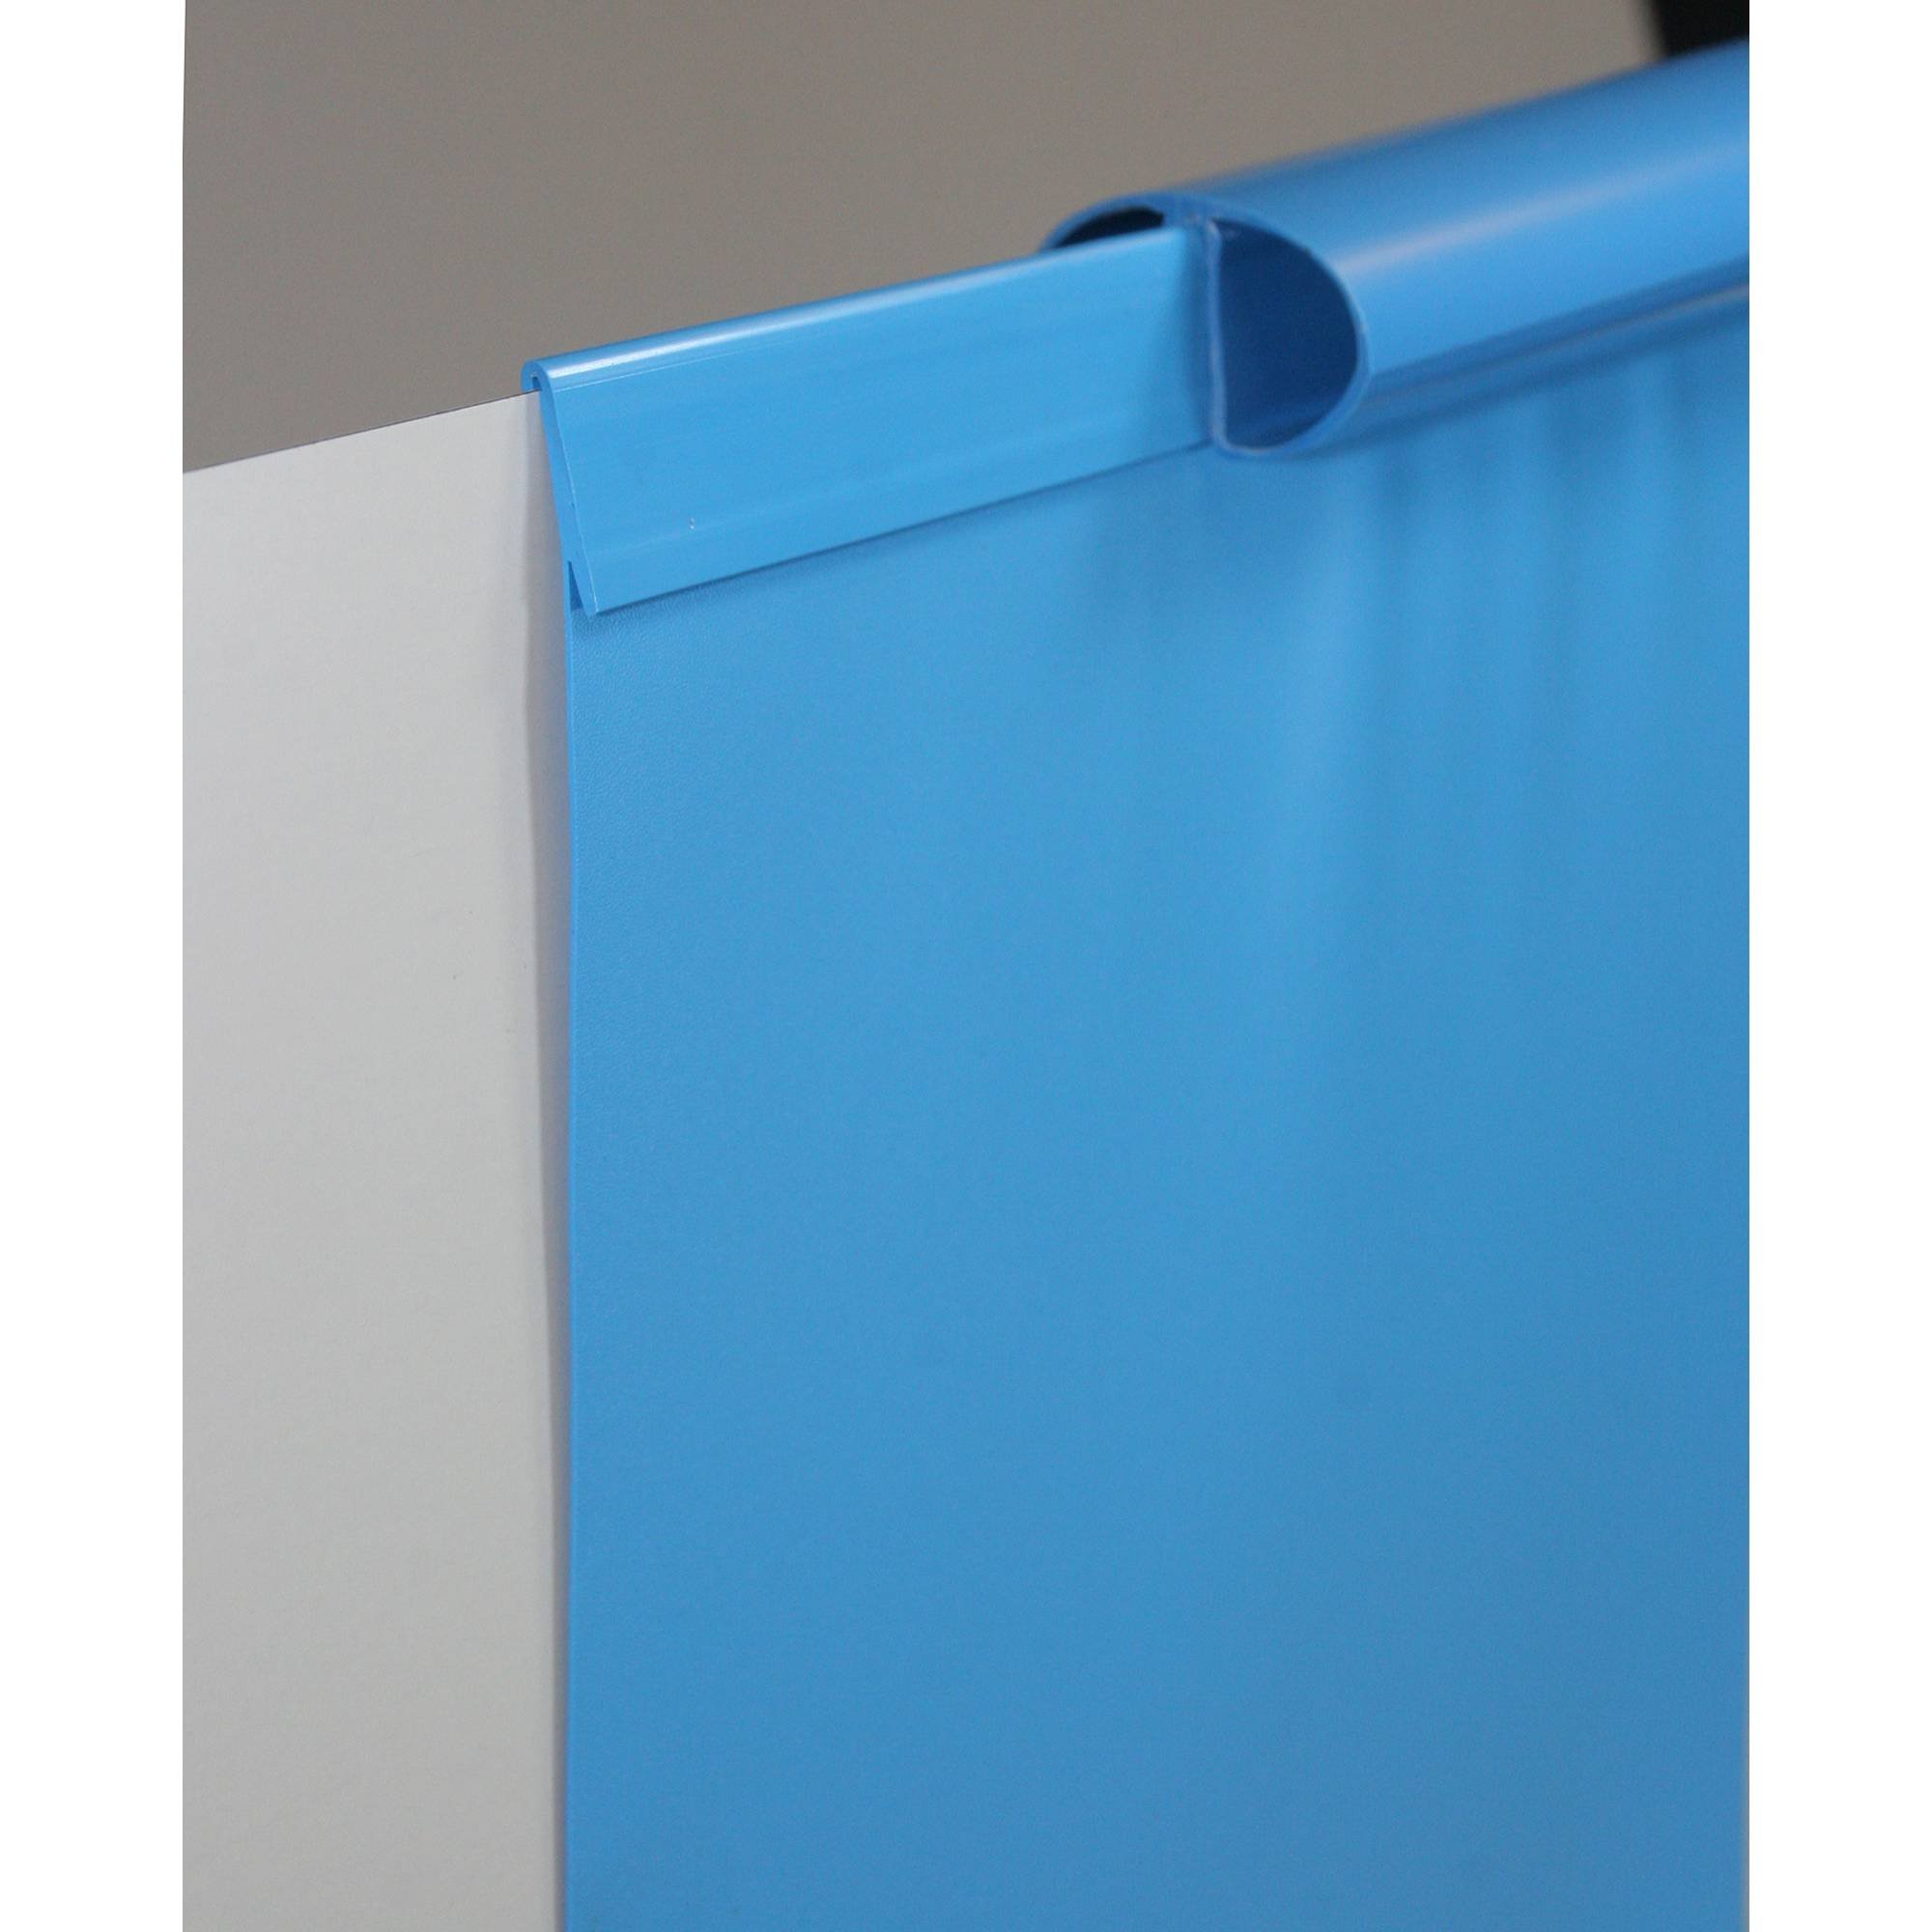 Poolfolie Ersatzfolie Ovalbecken 623x360x150cm - Dicke 0,6mm - Einhängebiese - blau